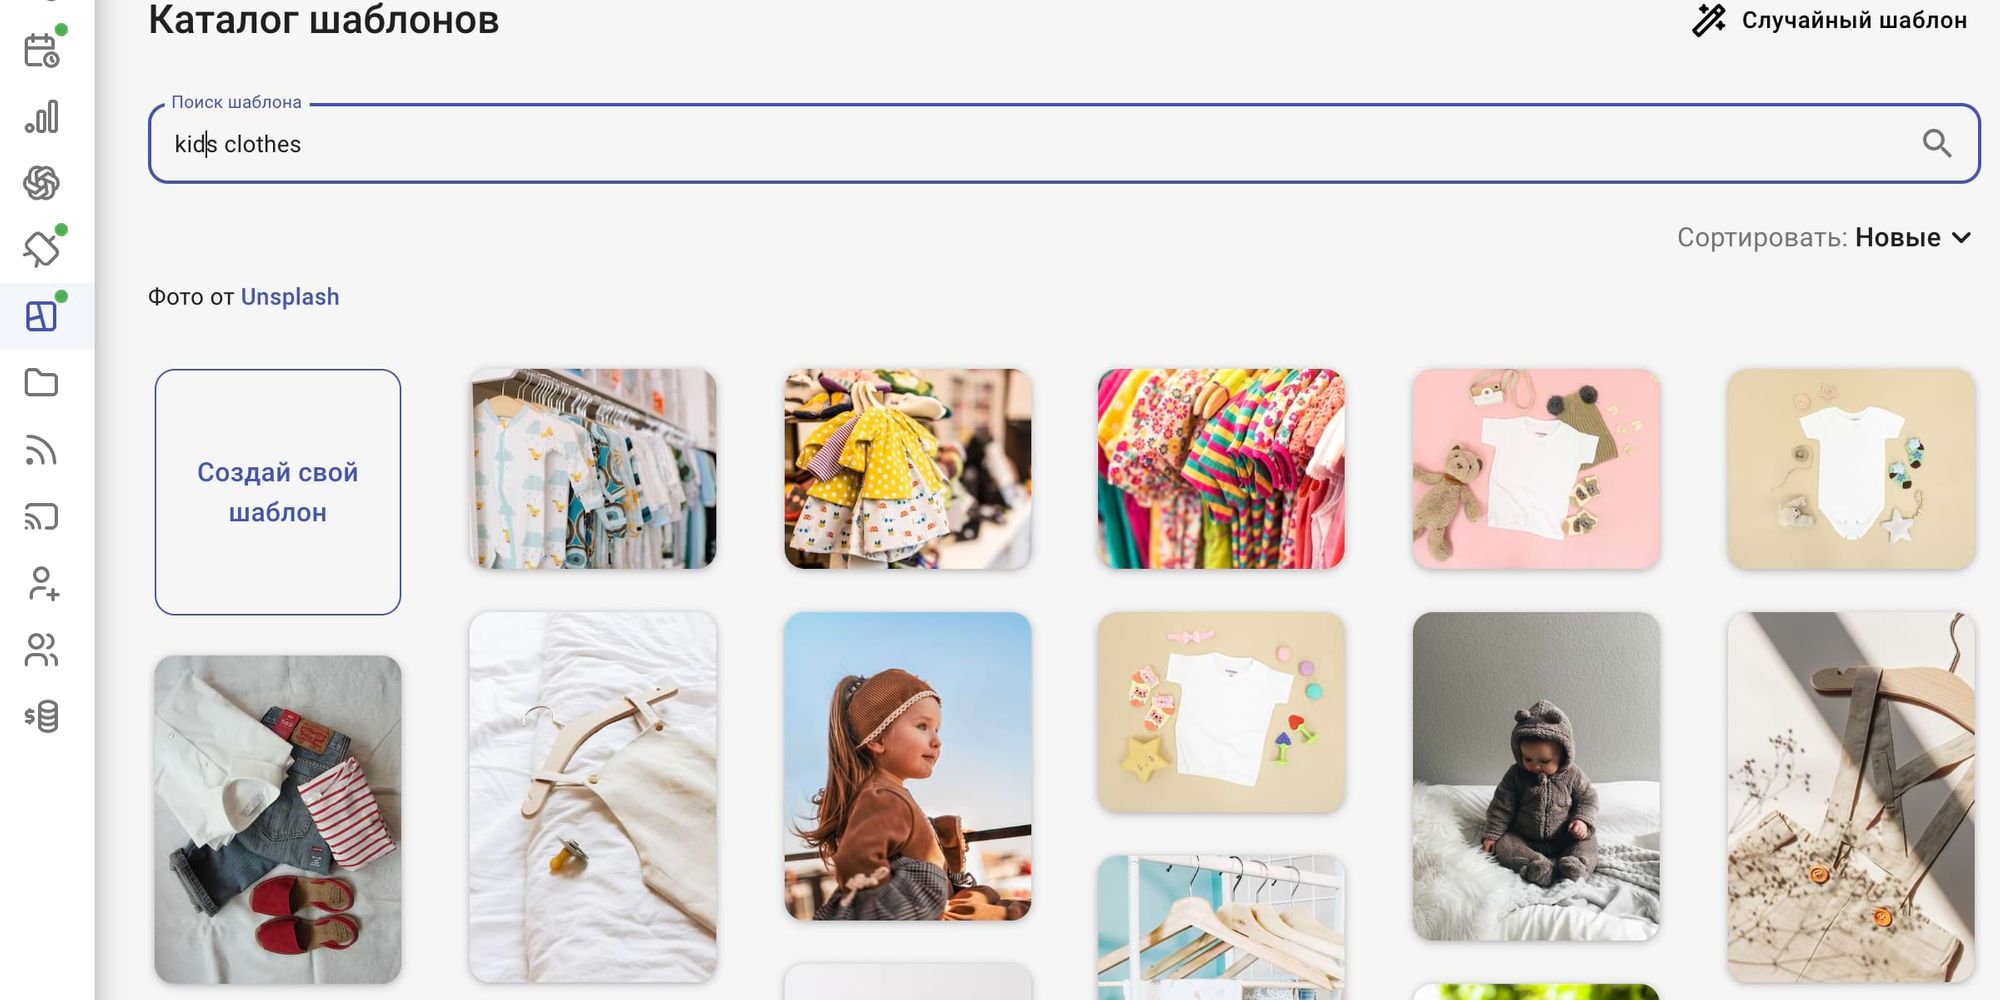 В каталоге шаблонов можно найти подборку для магазина детской одежды